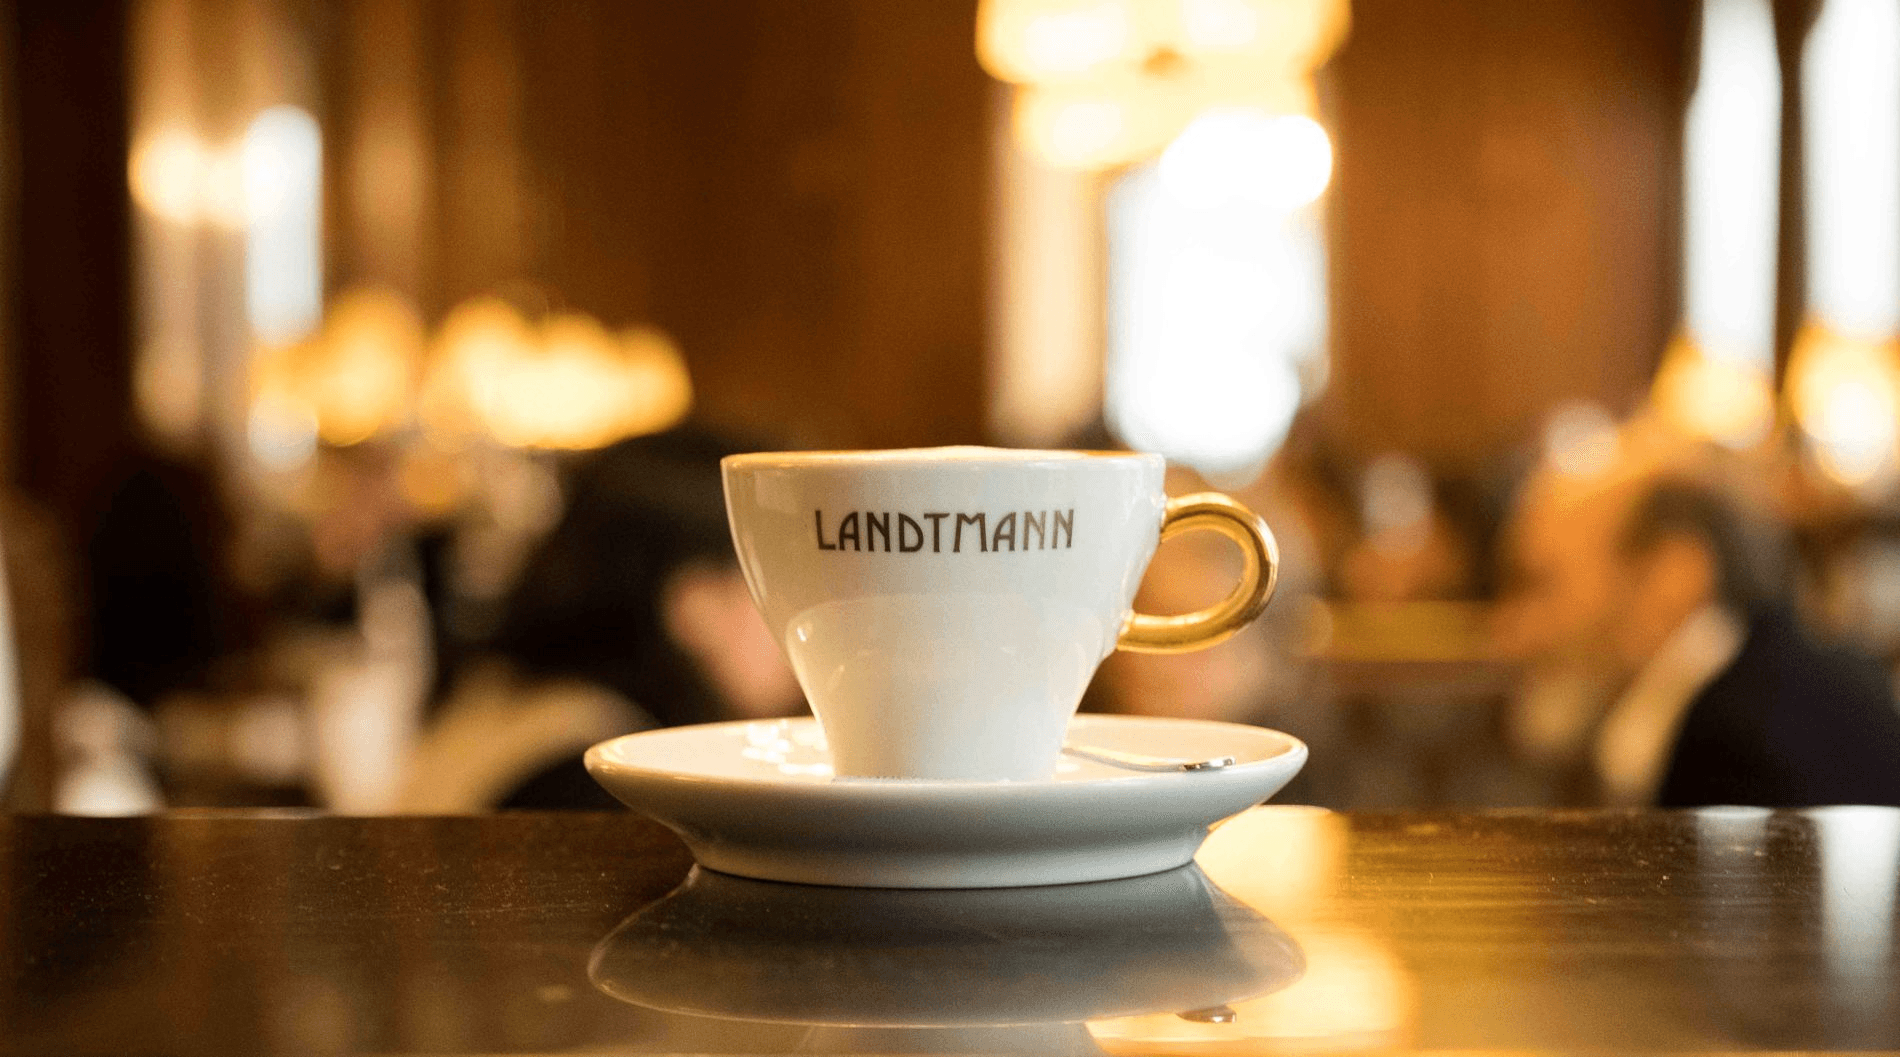 Vorschau - Foto 4 von Landtmann Cafe Restaurant